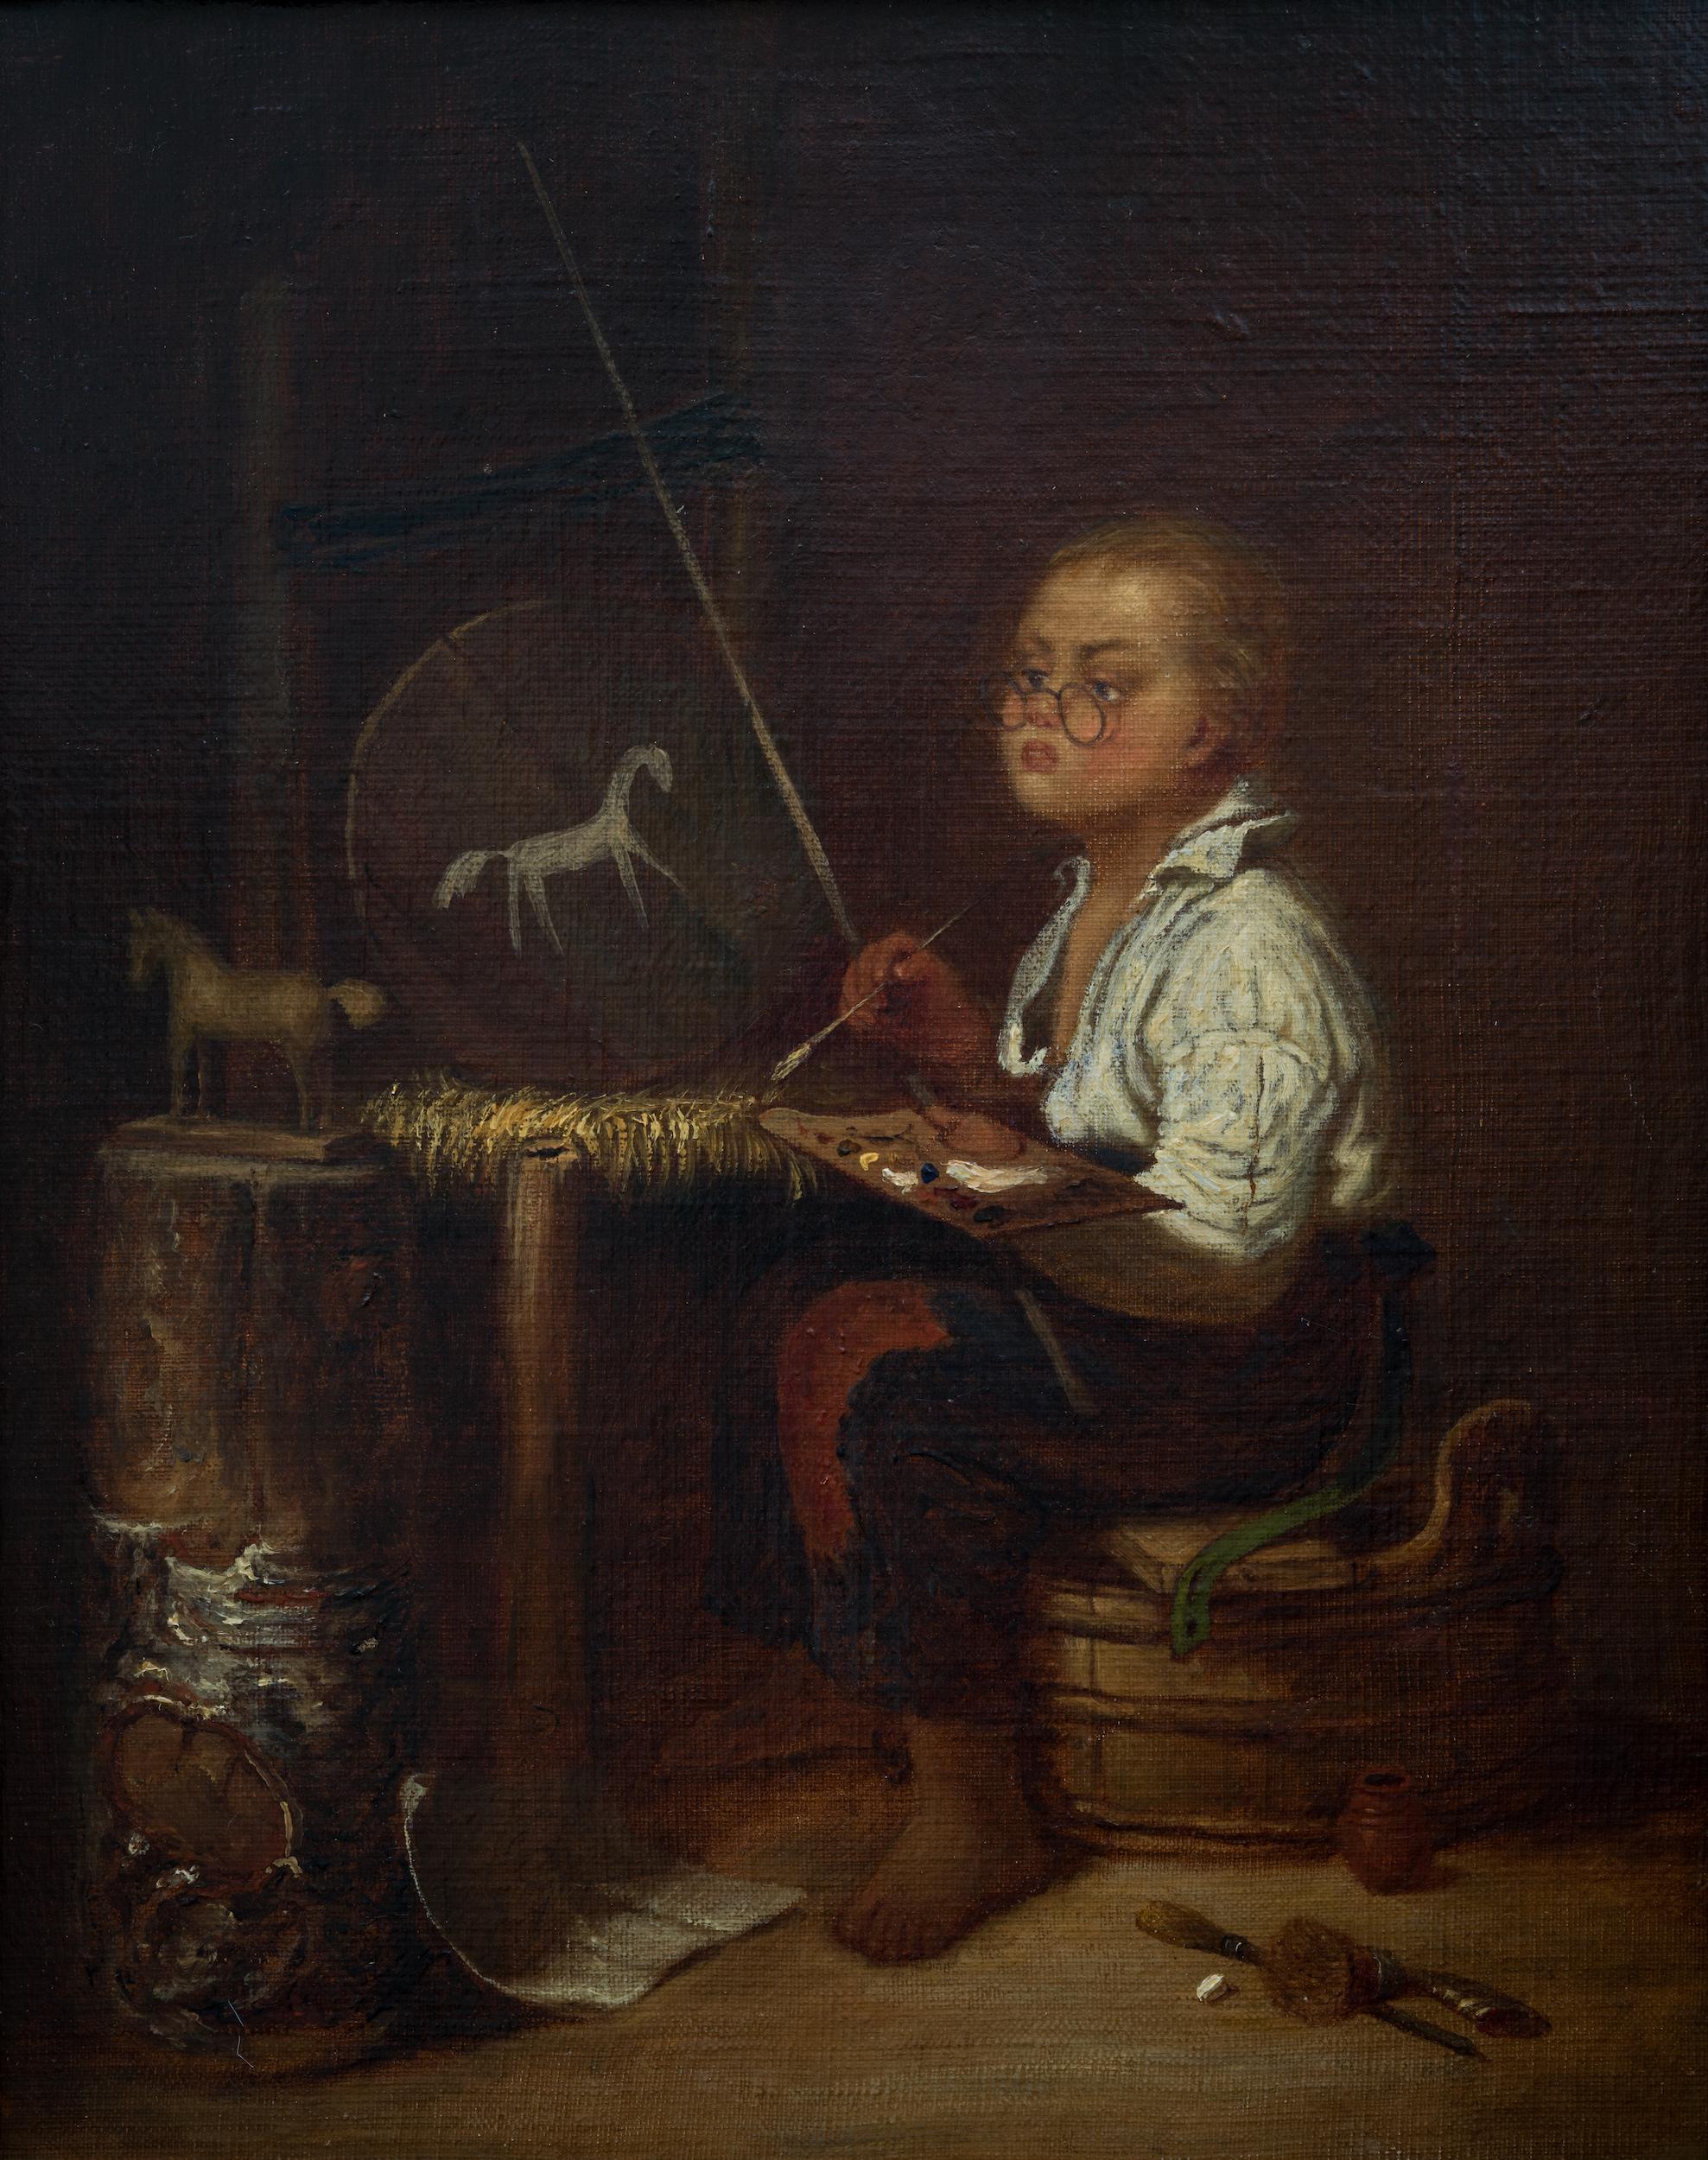 Wir stellen Ihnen ein fesselndes Ölgemälde von Johan Christoffer Boklund (1817-1880) vor. Das Kunstwerk zeigt einen kleinen Jungen, der seine Malfähigkeiten übt. Neben ihm sitzt ein Holzpferd, das er fleißig auf einer runden Holztafel nachbildet.